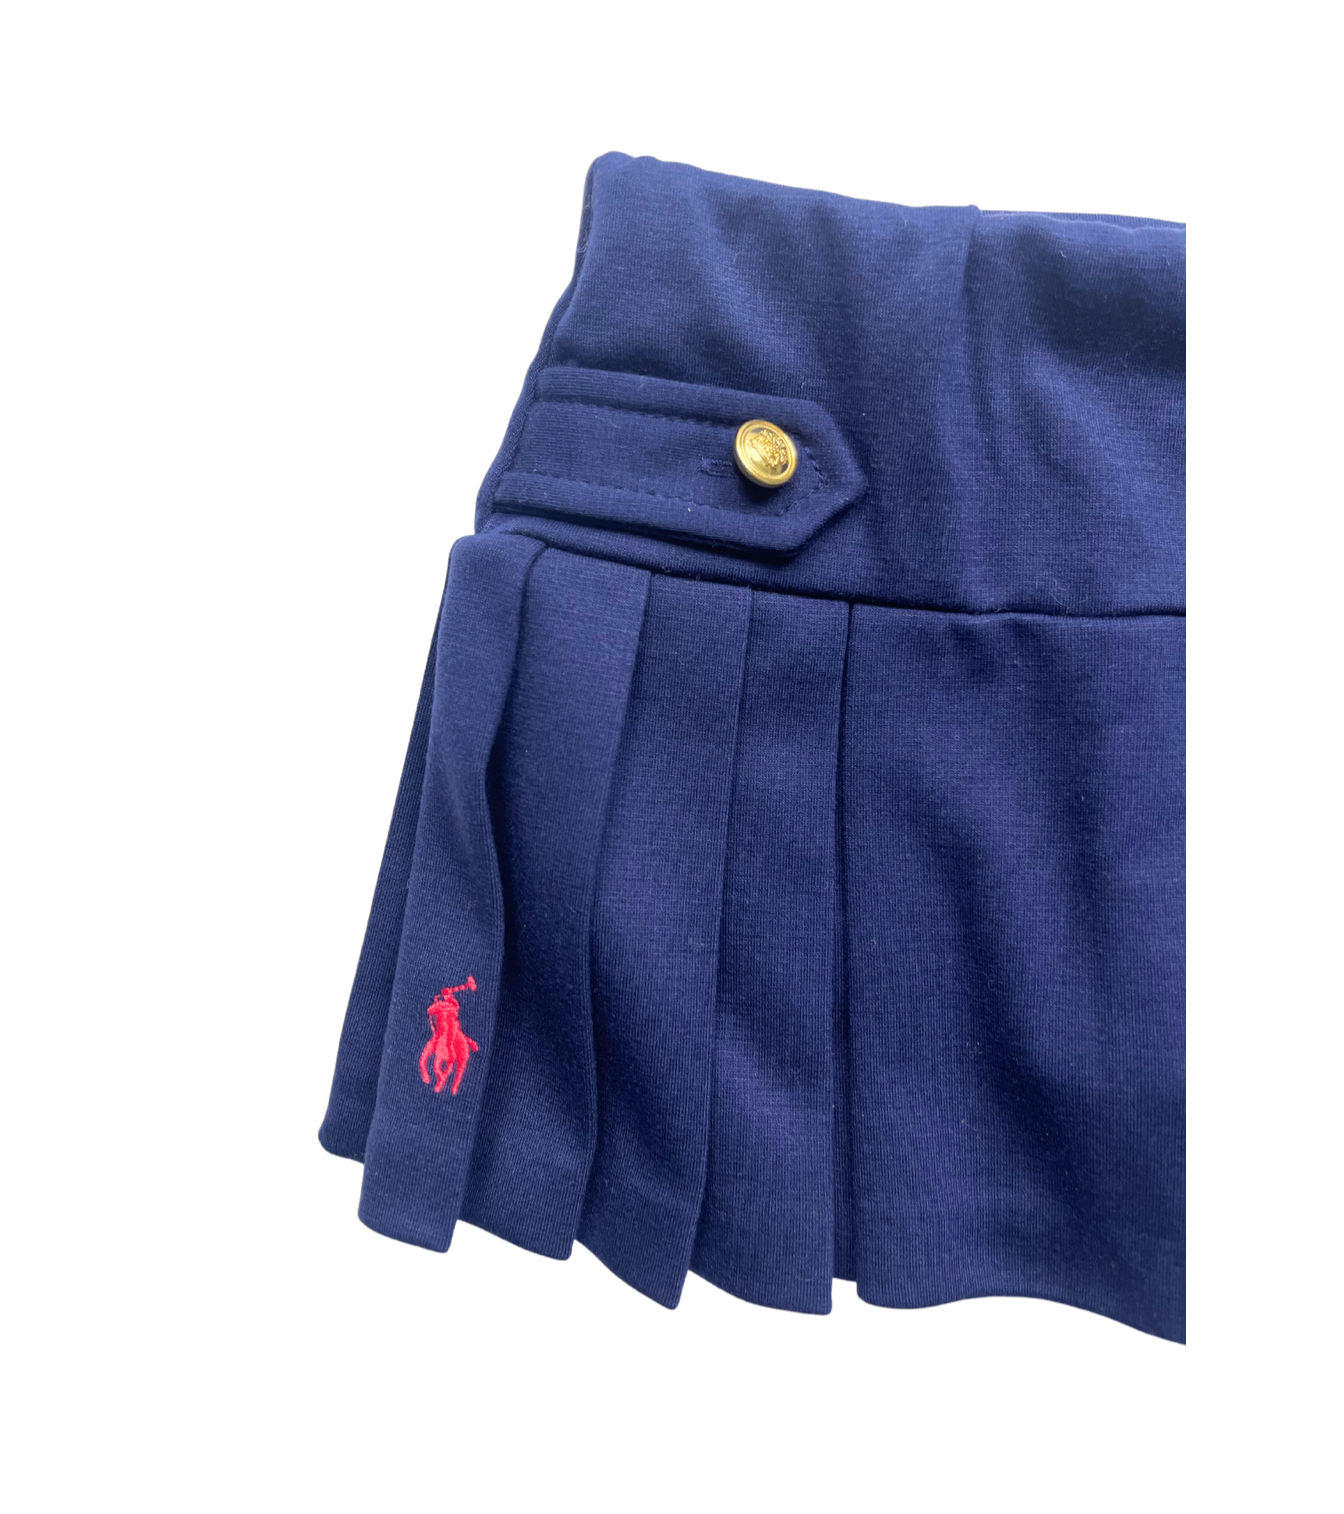 RALPH LAUREN - Jupe short en jersey bleu marine - 6 mois